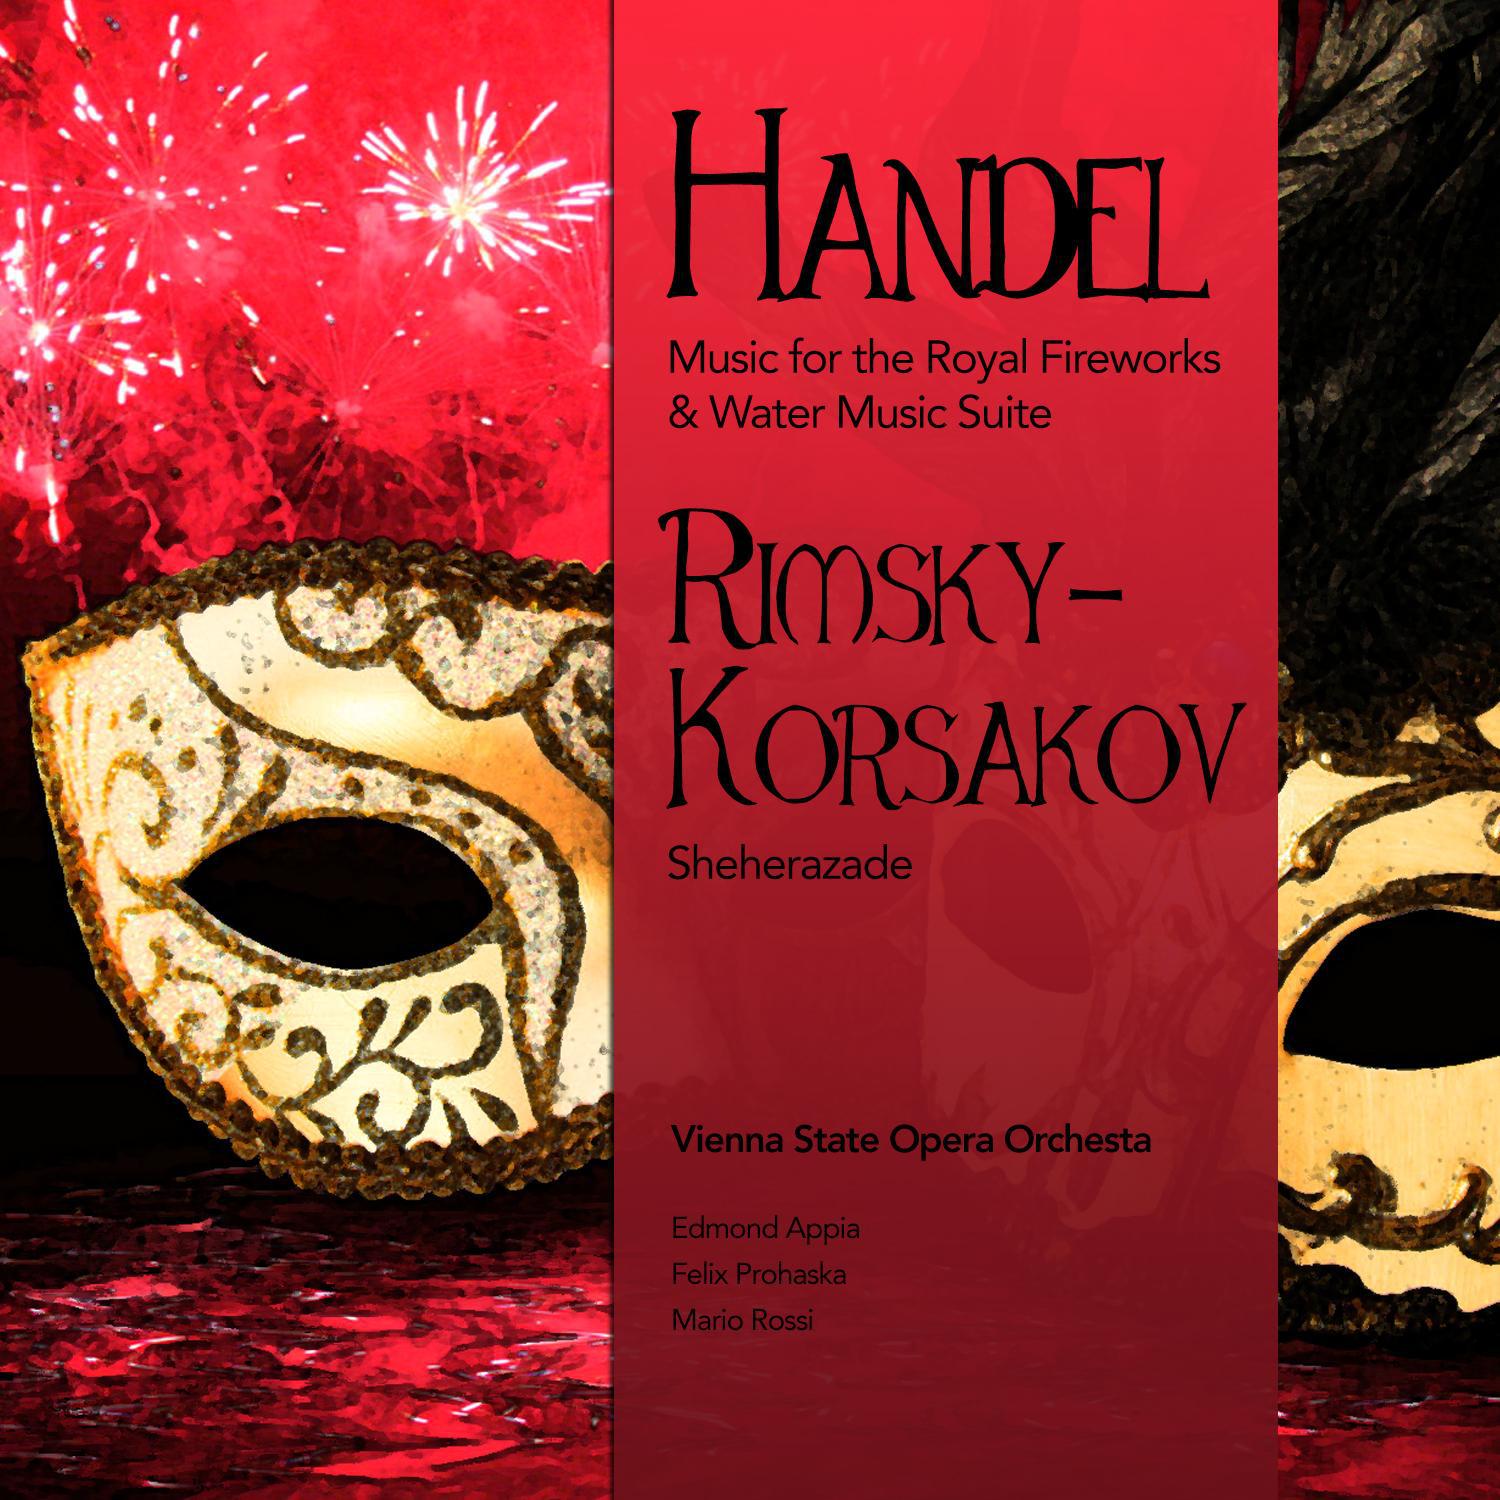 Handel: Music for the Royal Fireworks & Water Music Suite - Rimsky-Korsakov: Sheherazade